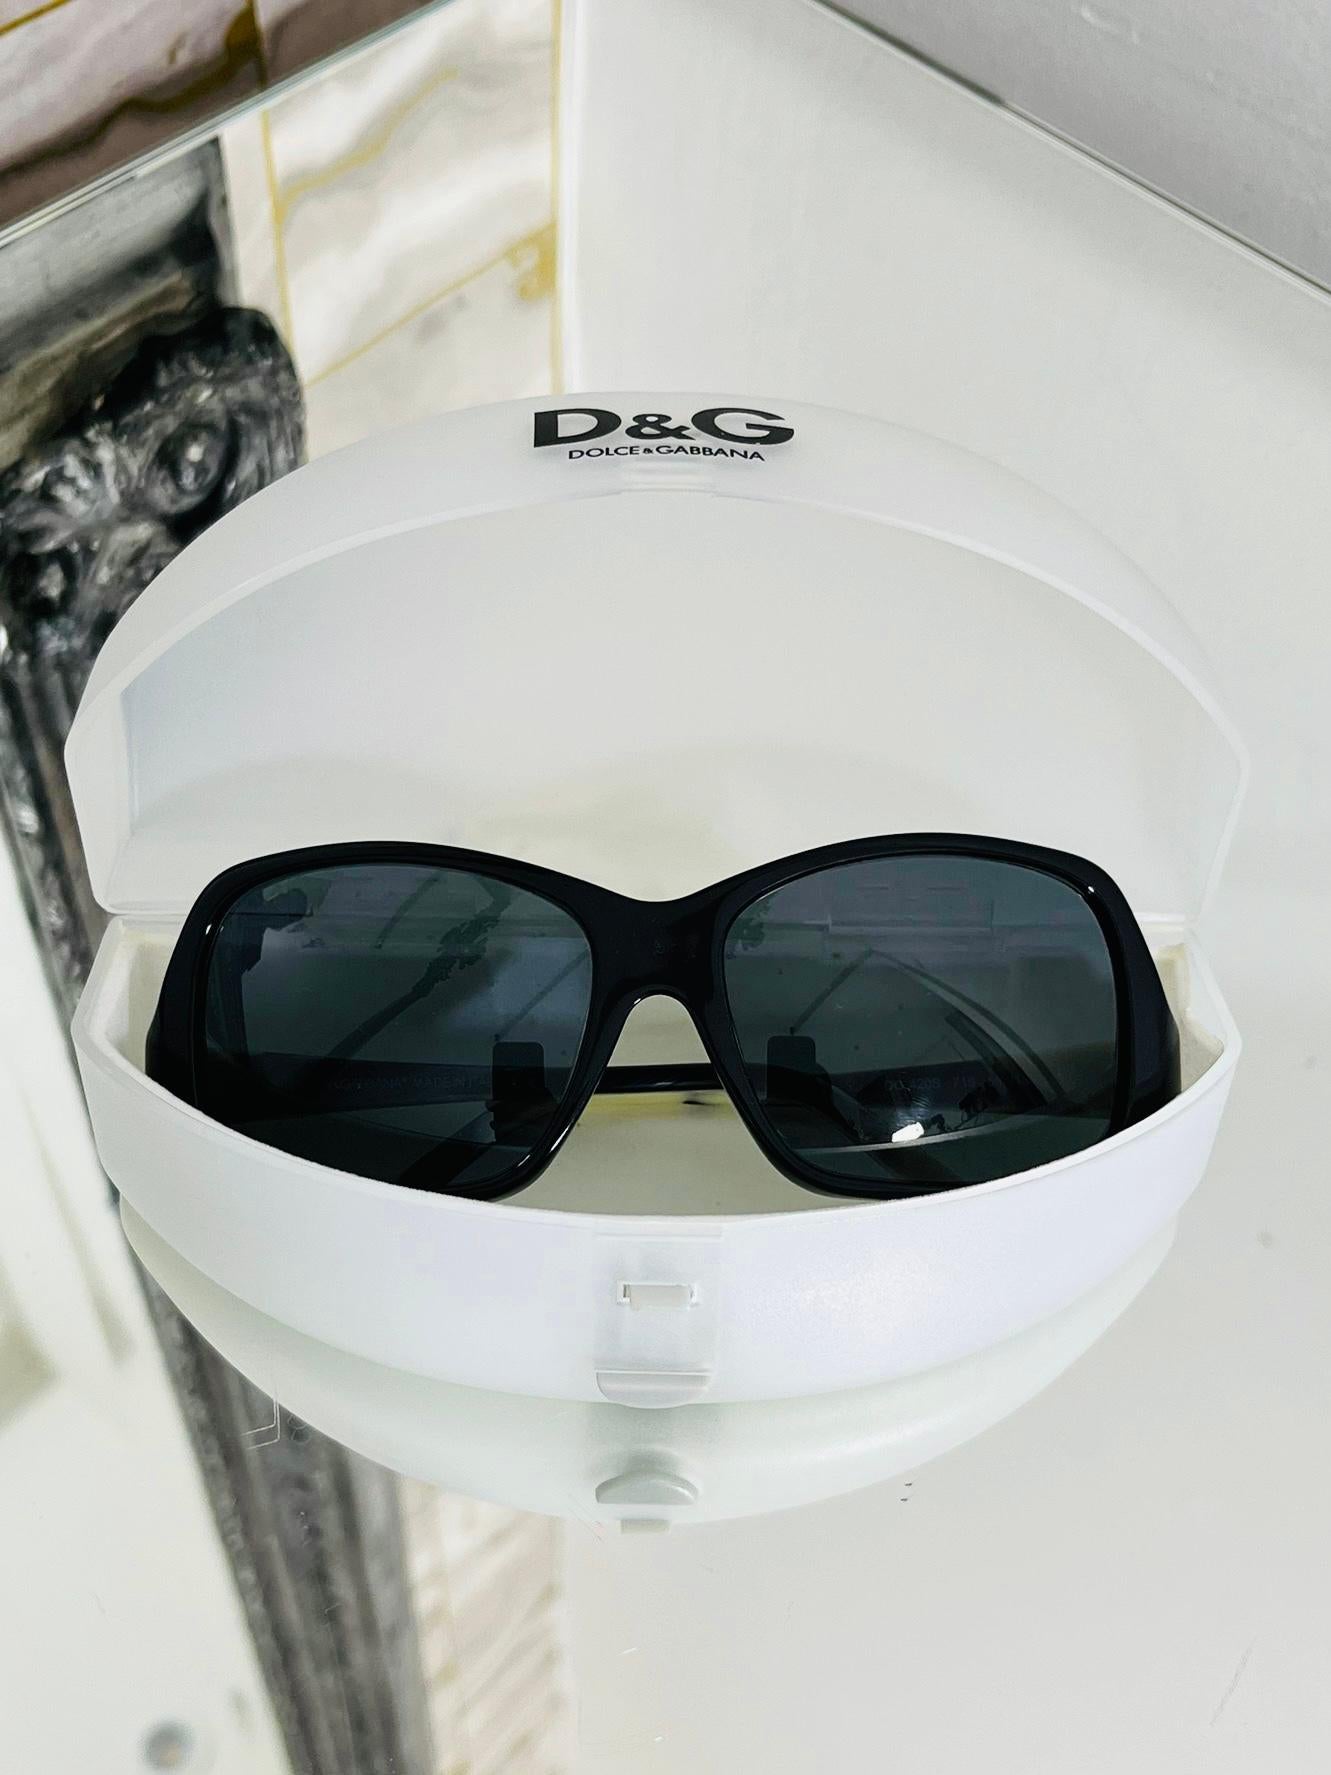 Lunettes de soleil Dolce & Gabbana

Cadres en acétate, en noir sur le devant et en ivoire et noir sur les côtés

avec le logo Dolce & Gabbana.

Taille - Unique

État - Très bon

Composition - Plastique

Livré avec - Étui